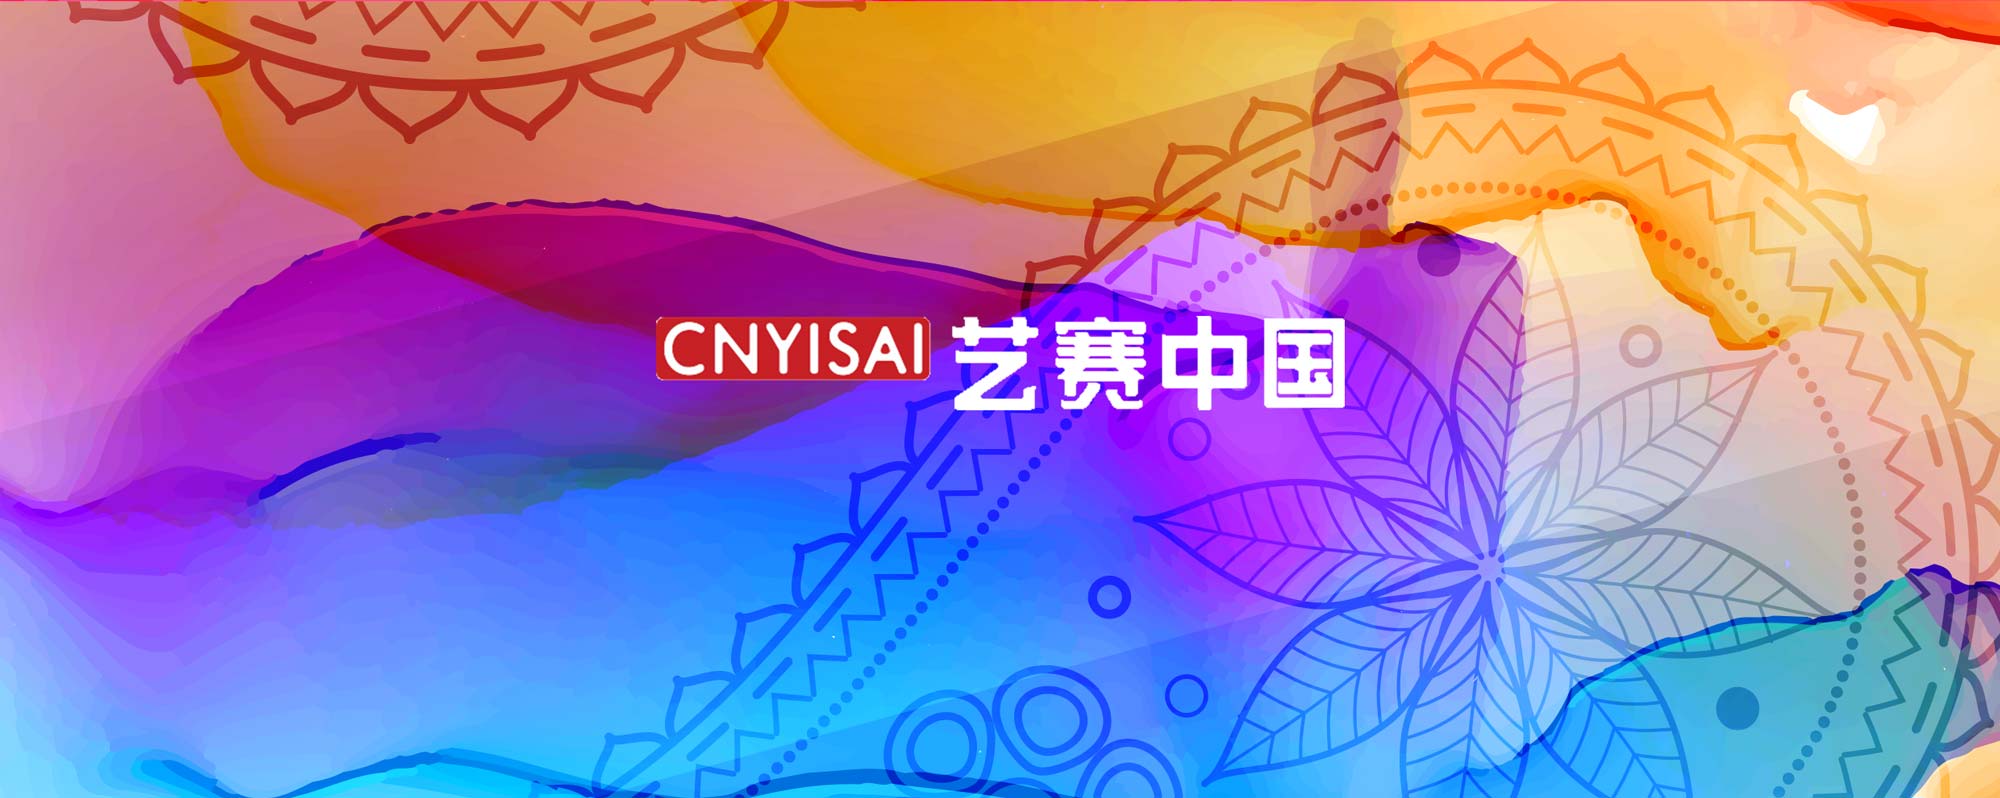 [获奖查询] 第二届国际大学生艺术年度奖-CNYISAI艺赛